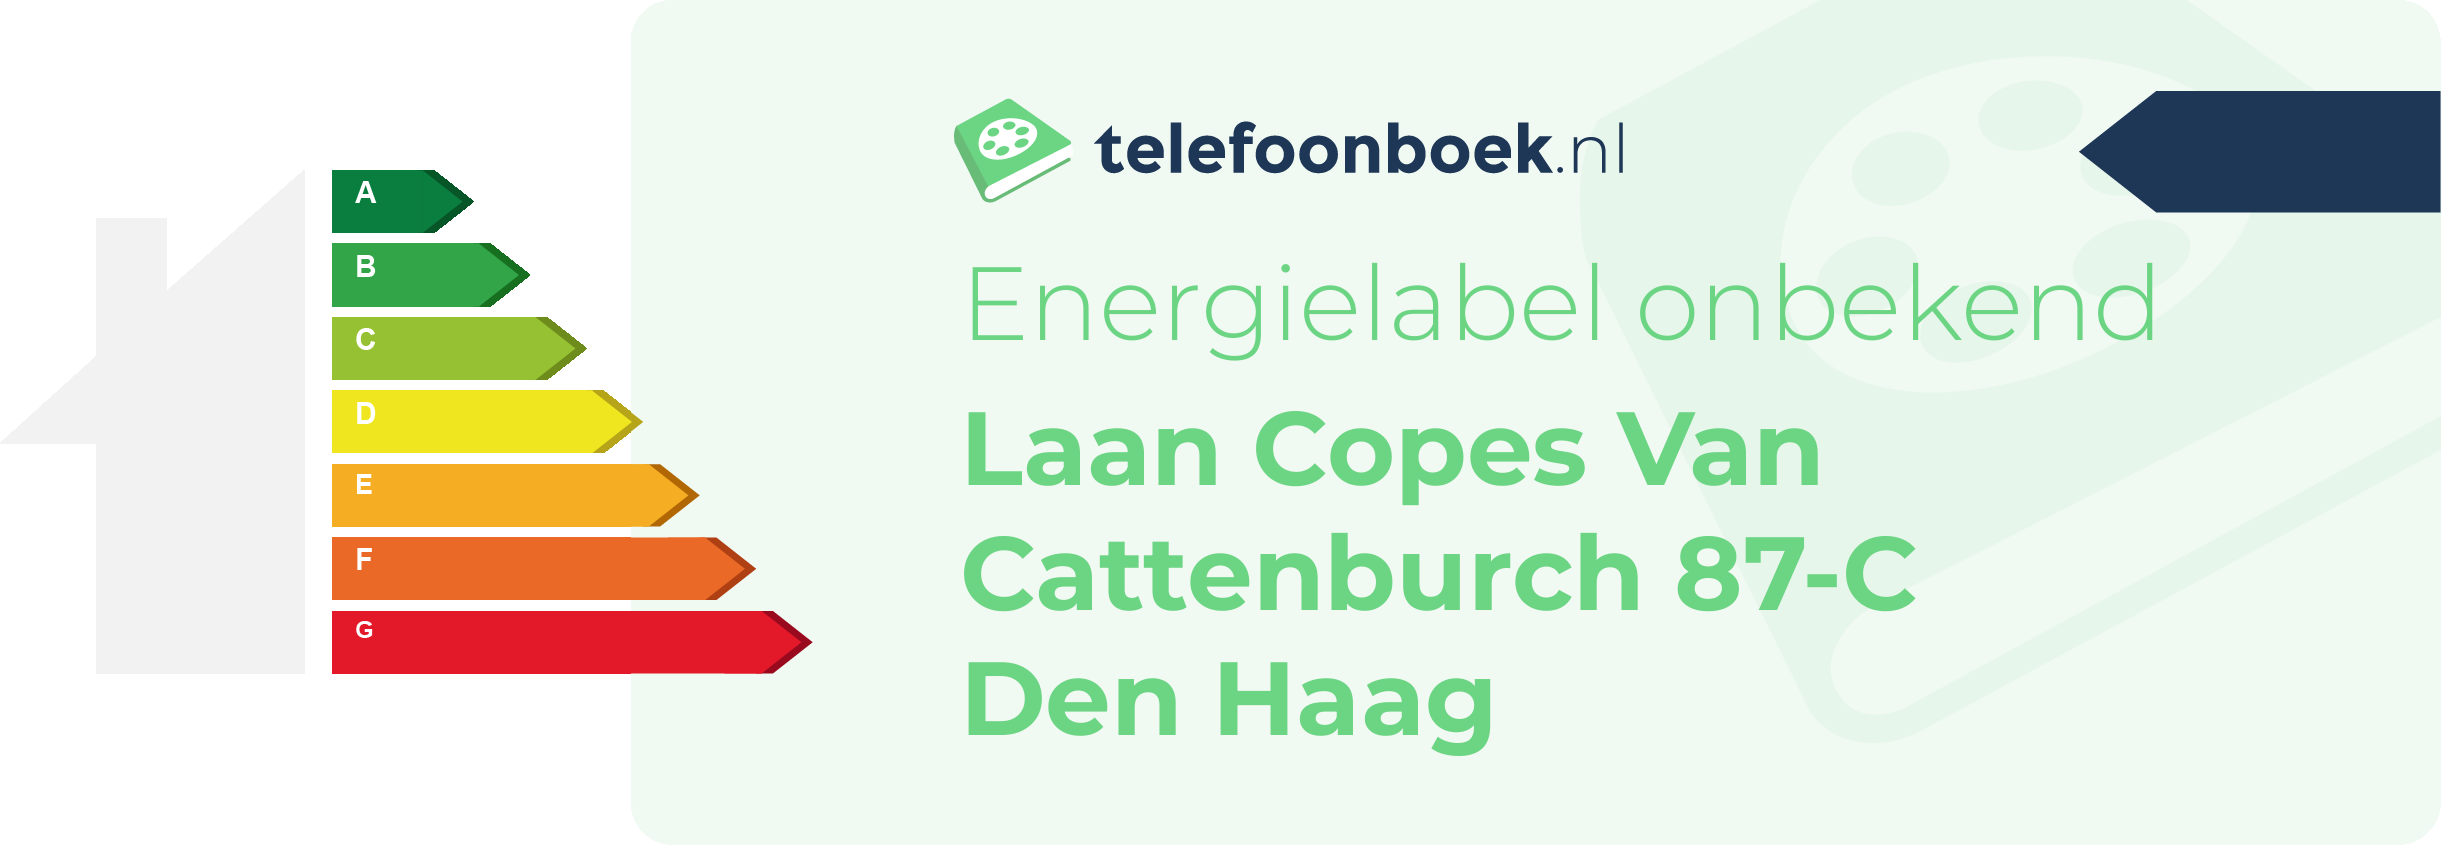 Energielabel Laan Copes Van Cattenburch 87-C Den Haag